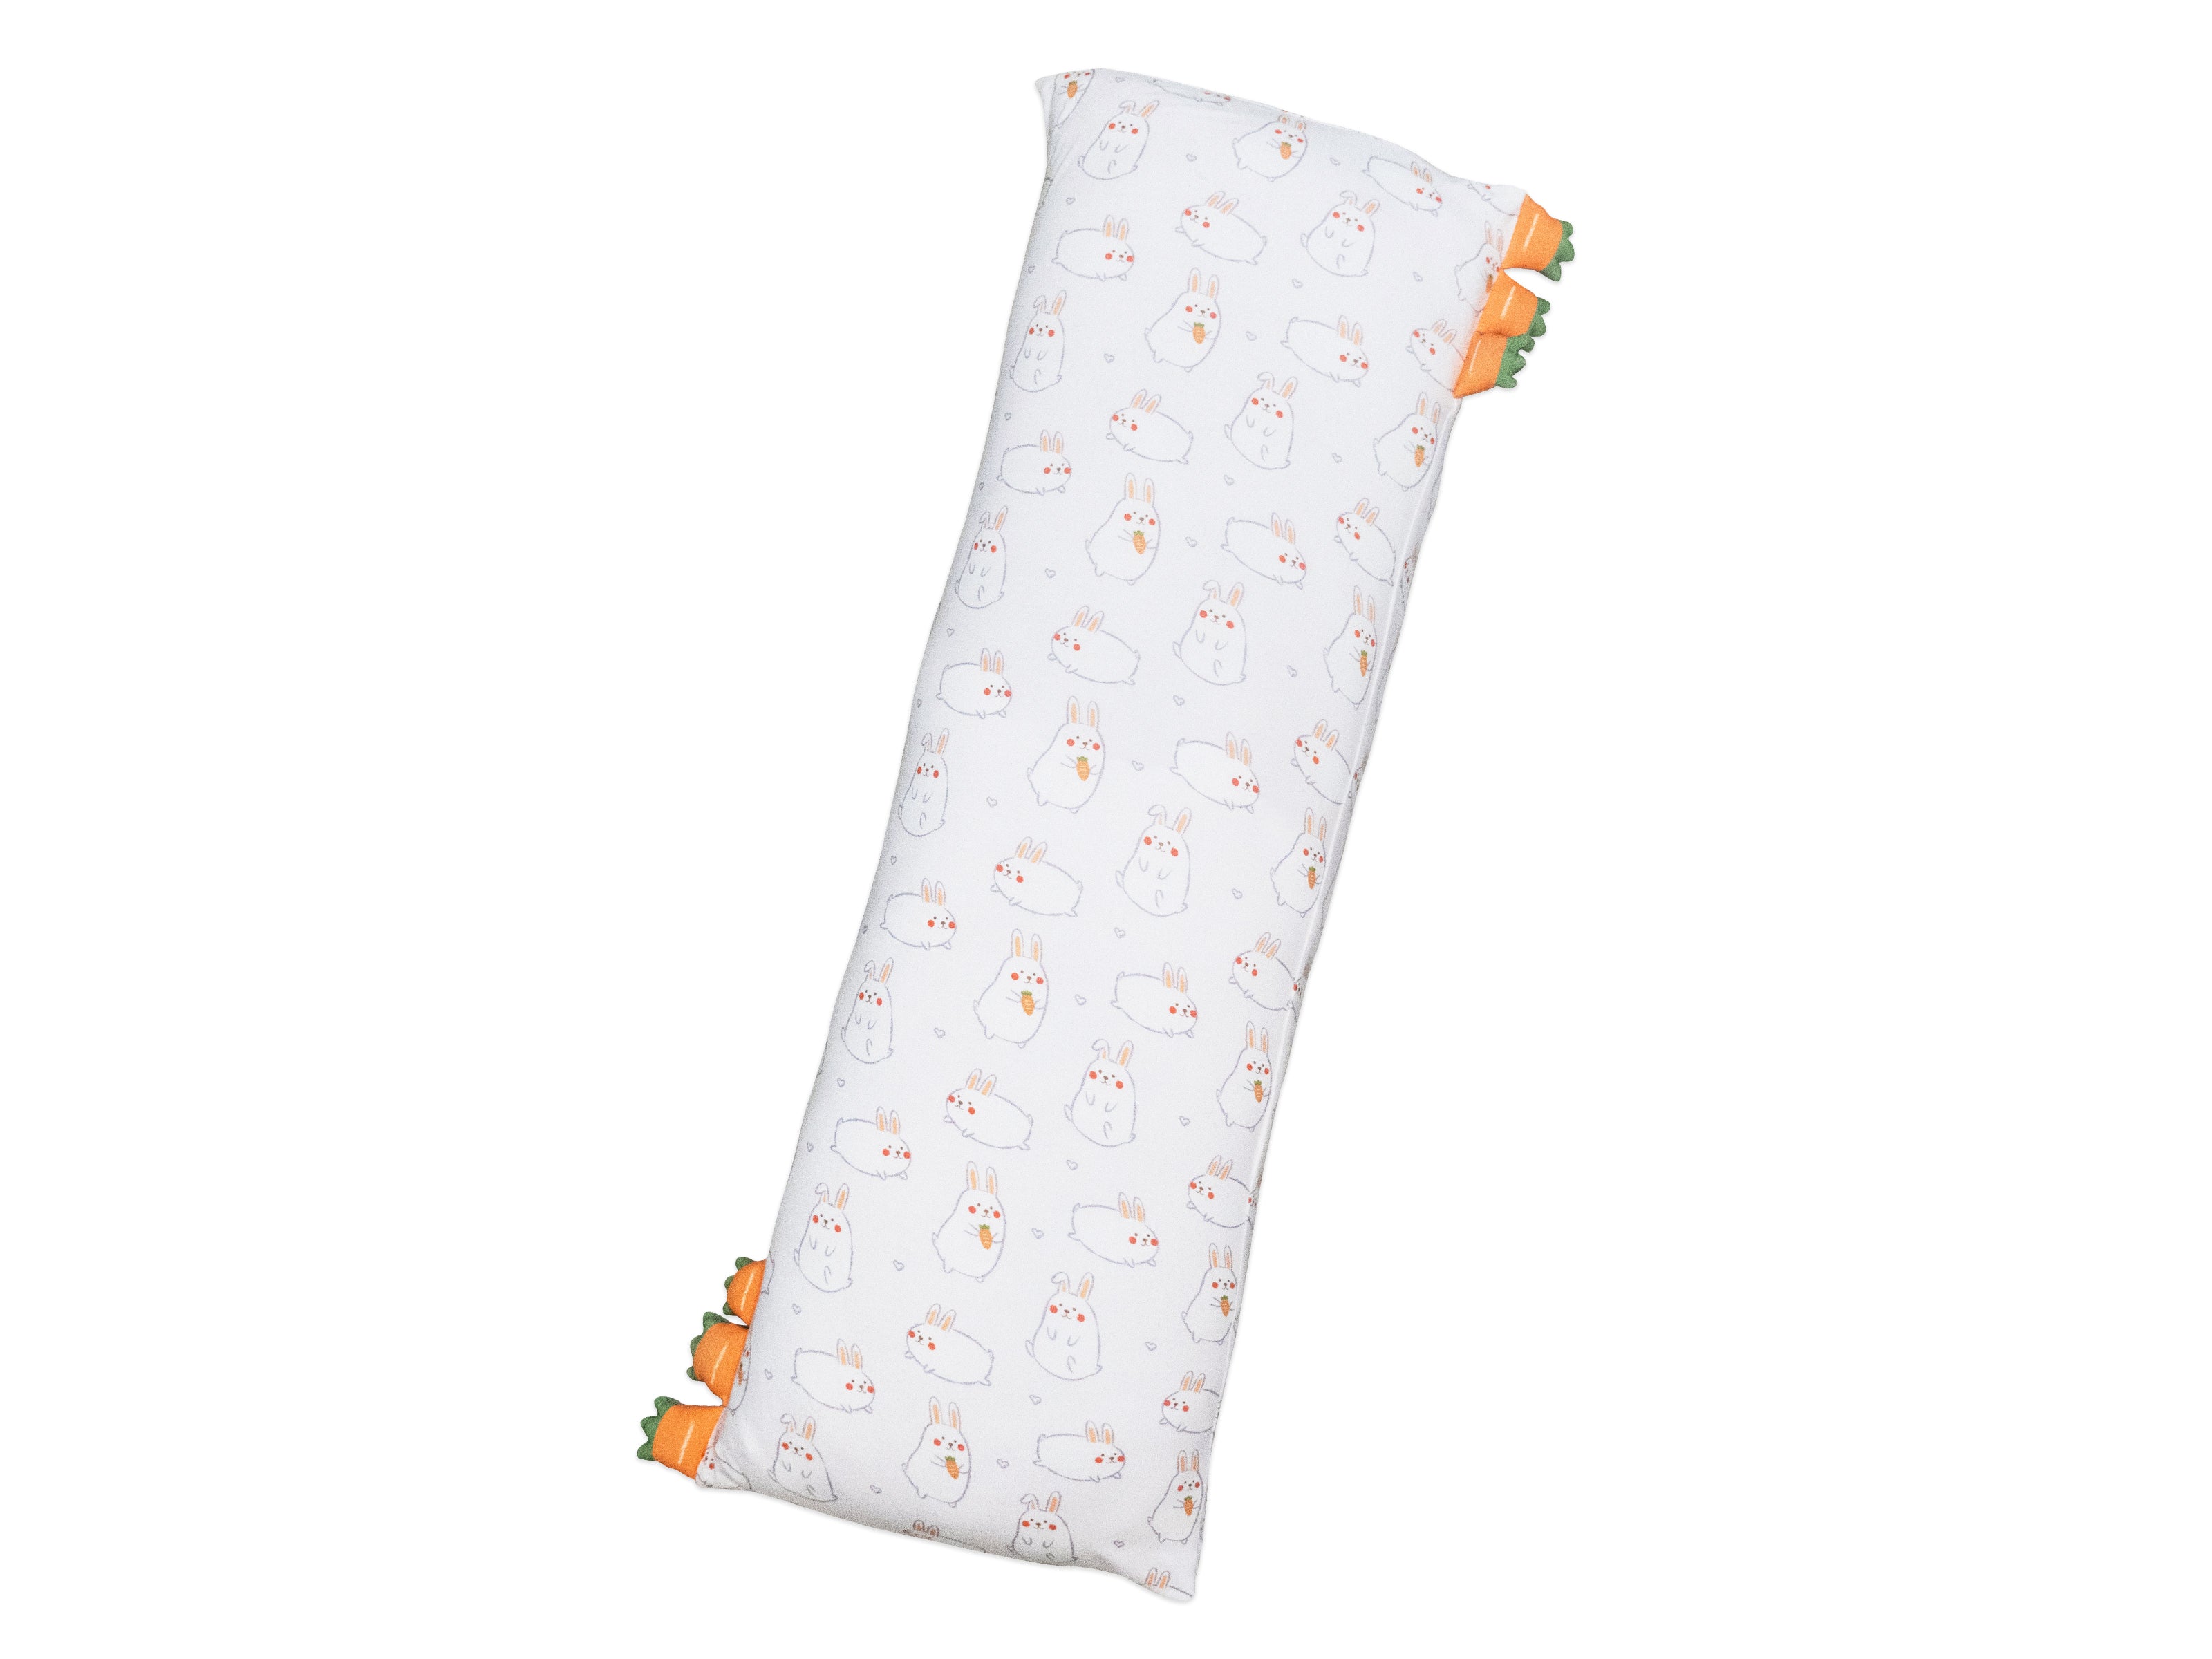 cho pillow xl size in momo bunny design